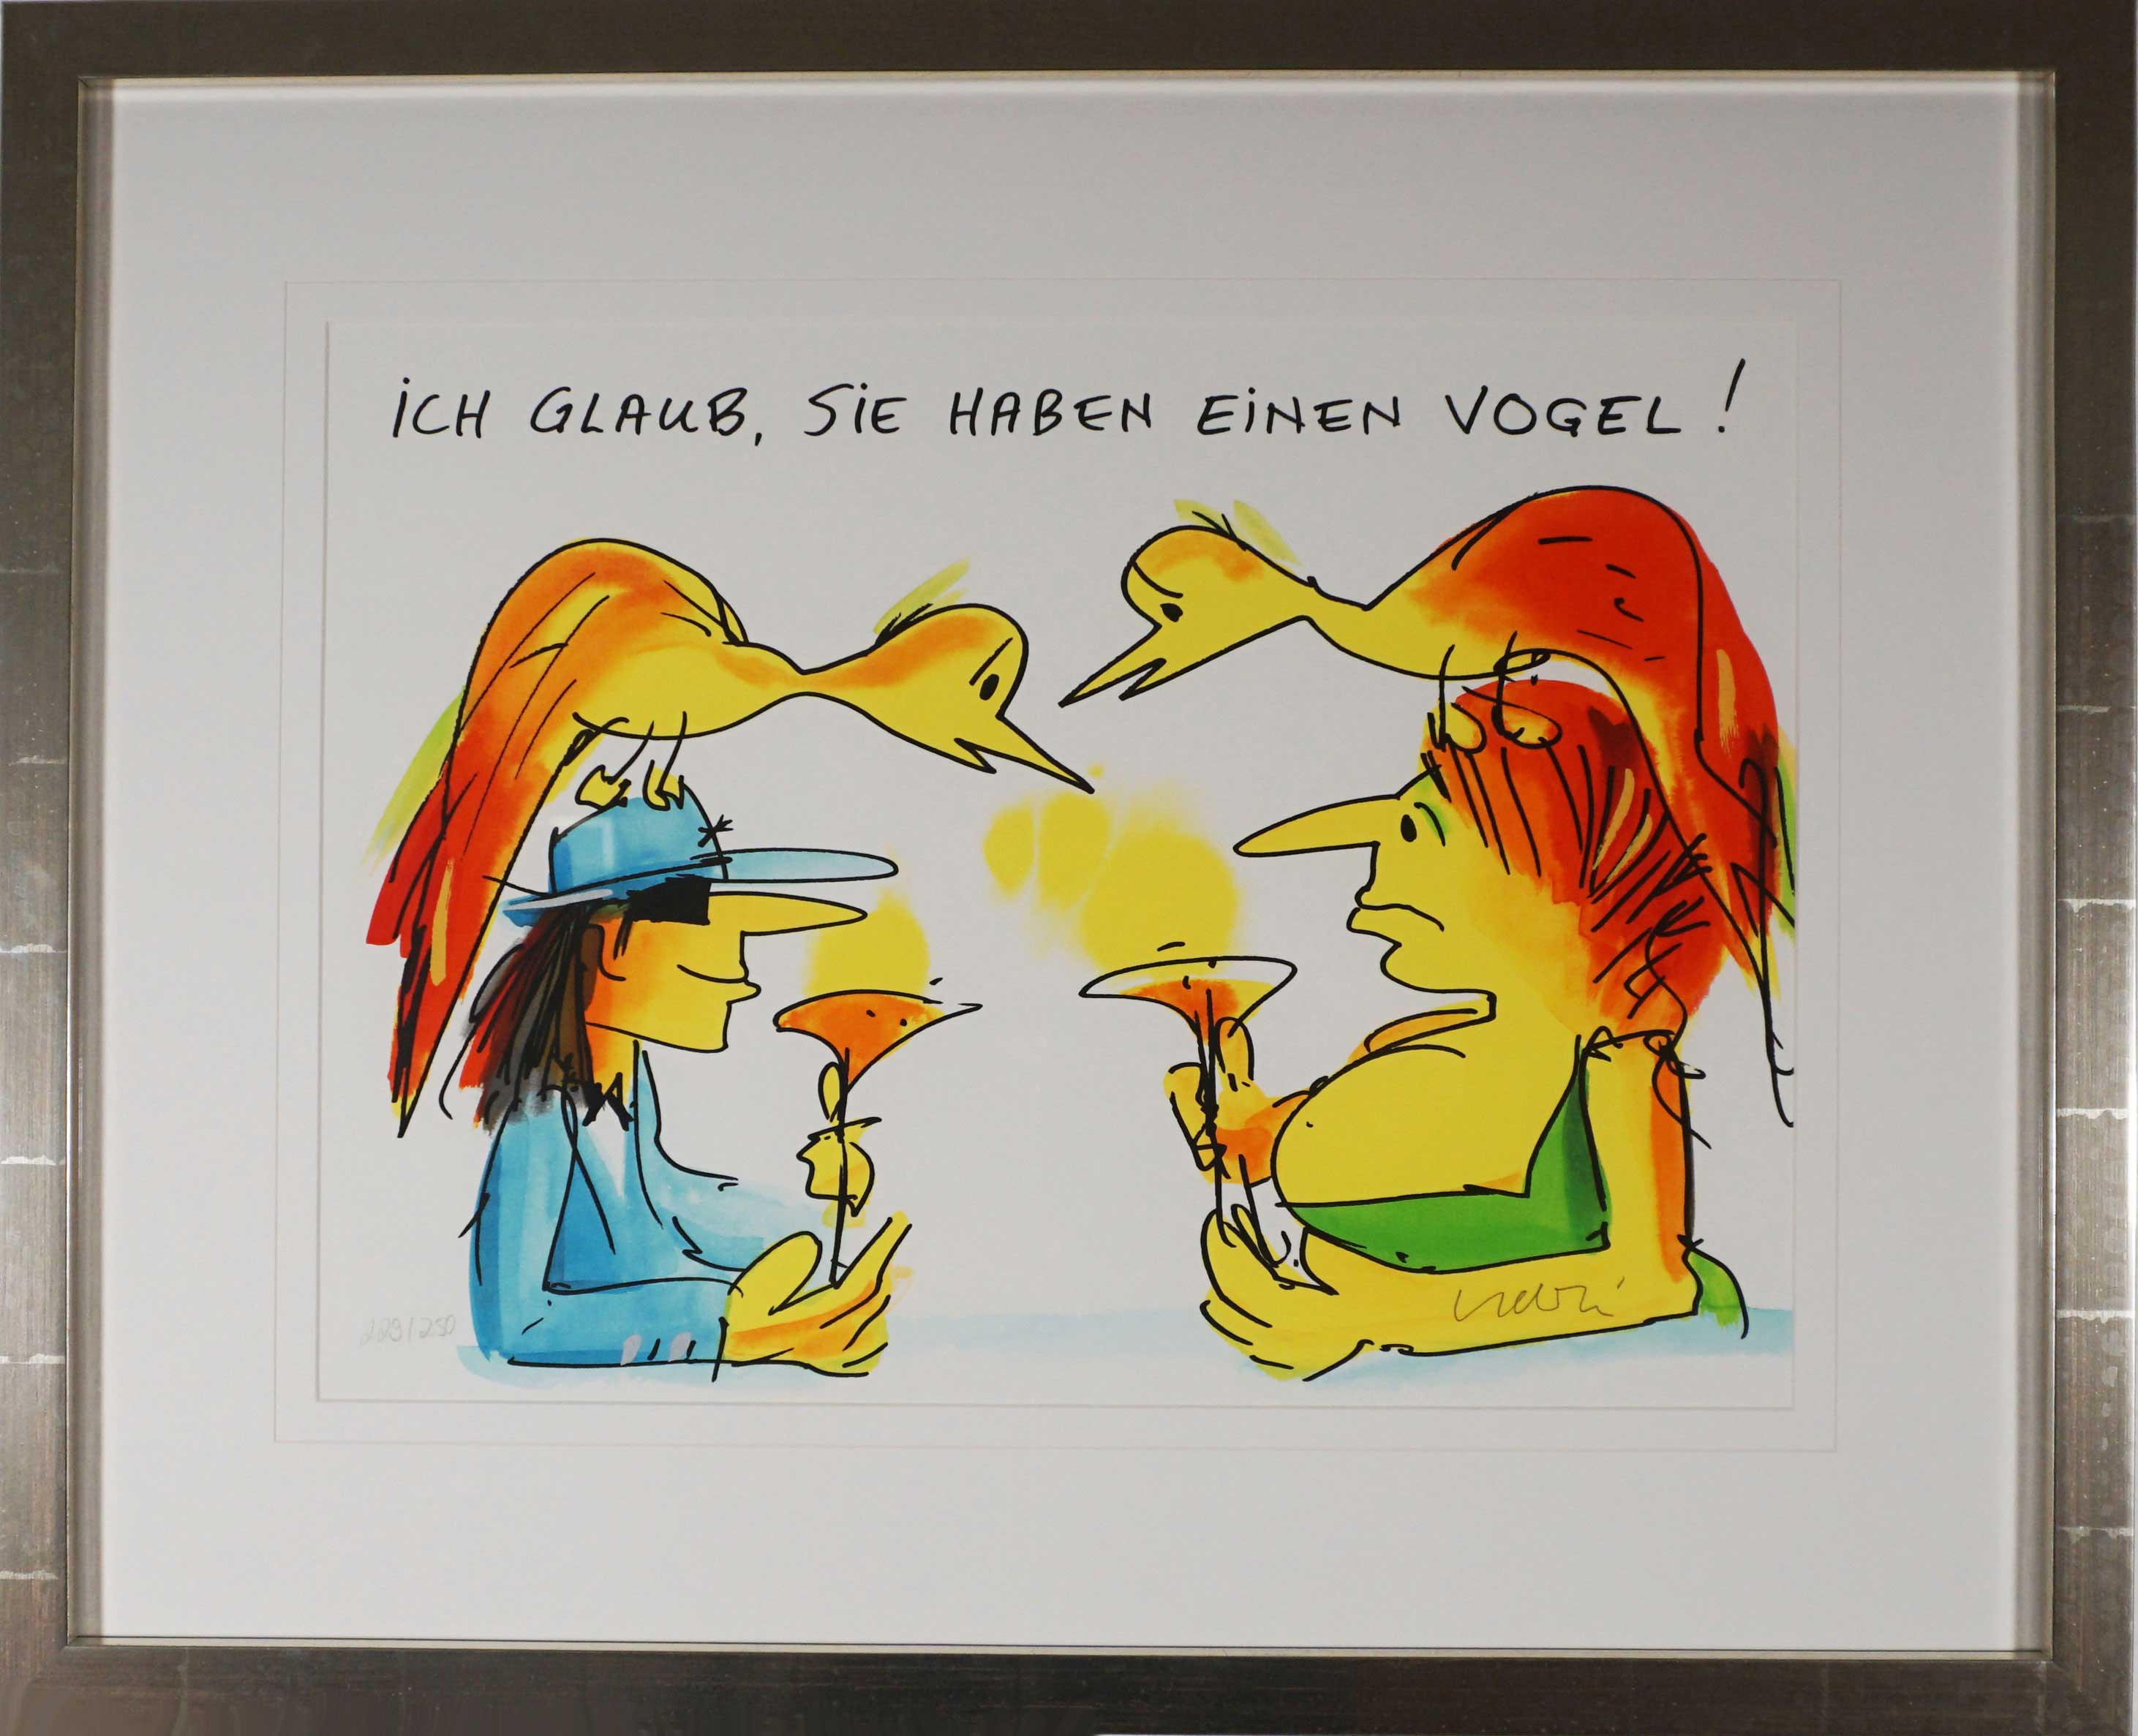 Udo Lindenberg "Ich glaub Sie haben einen Vogel"